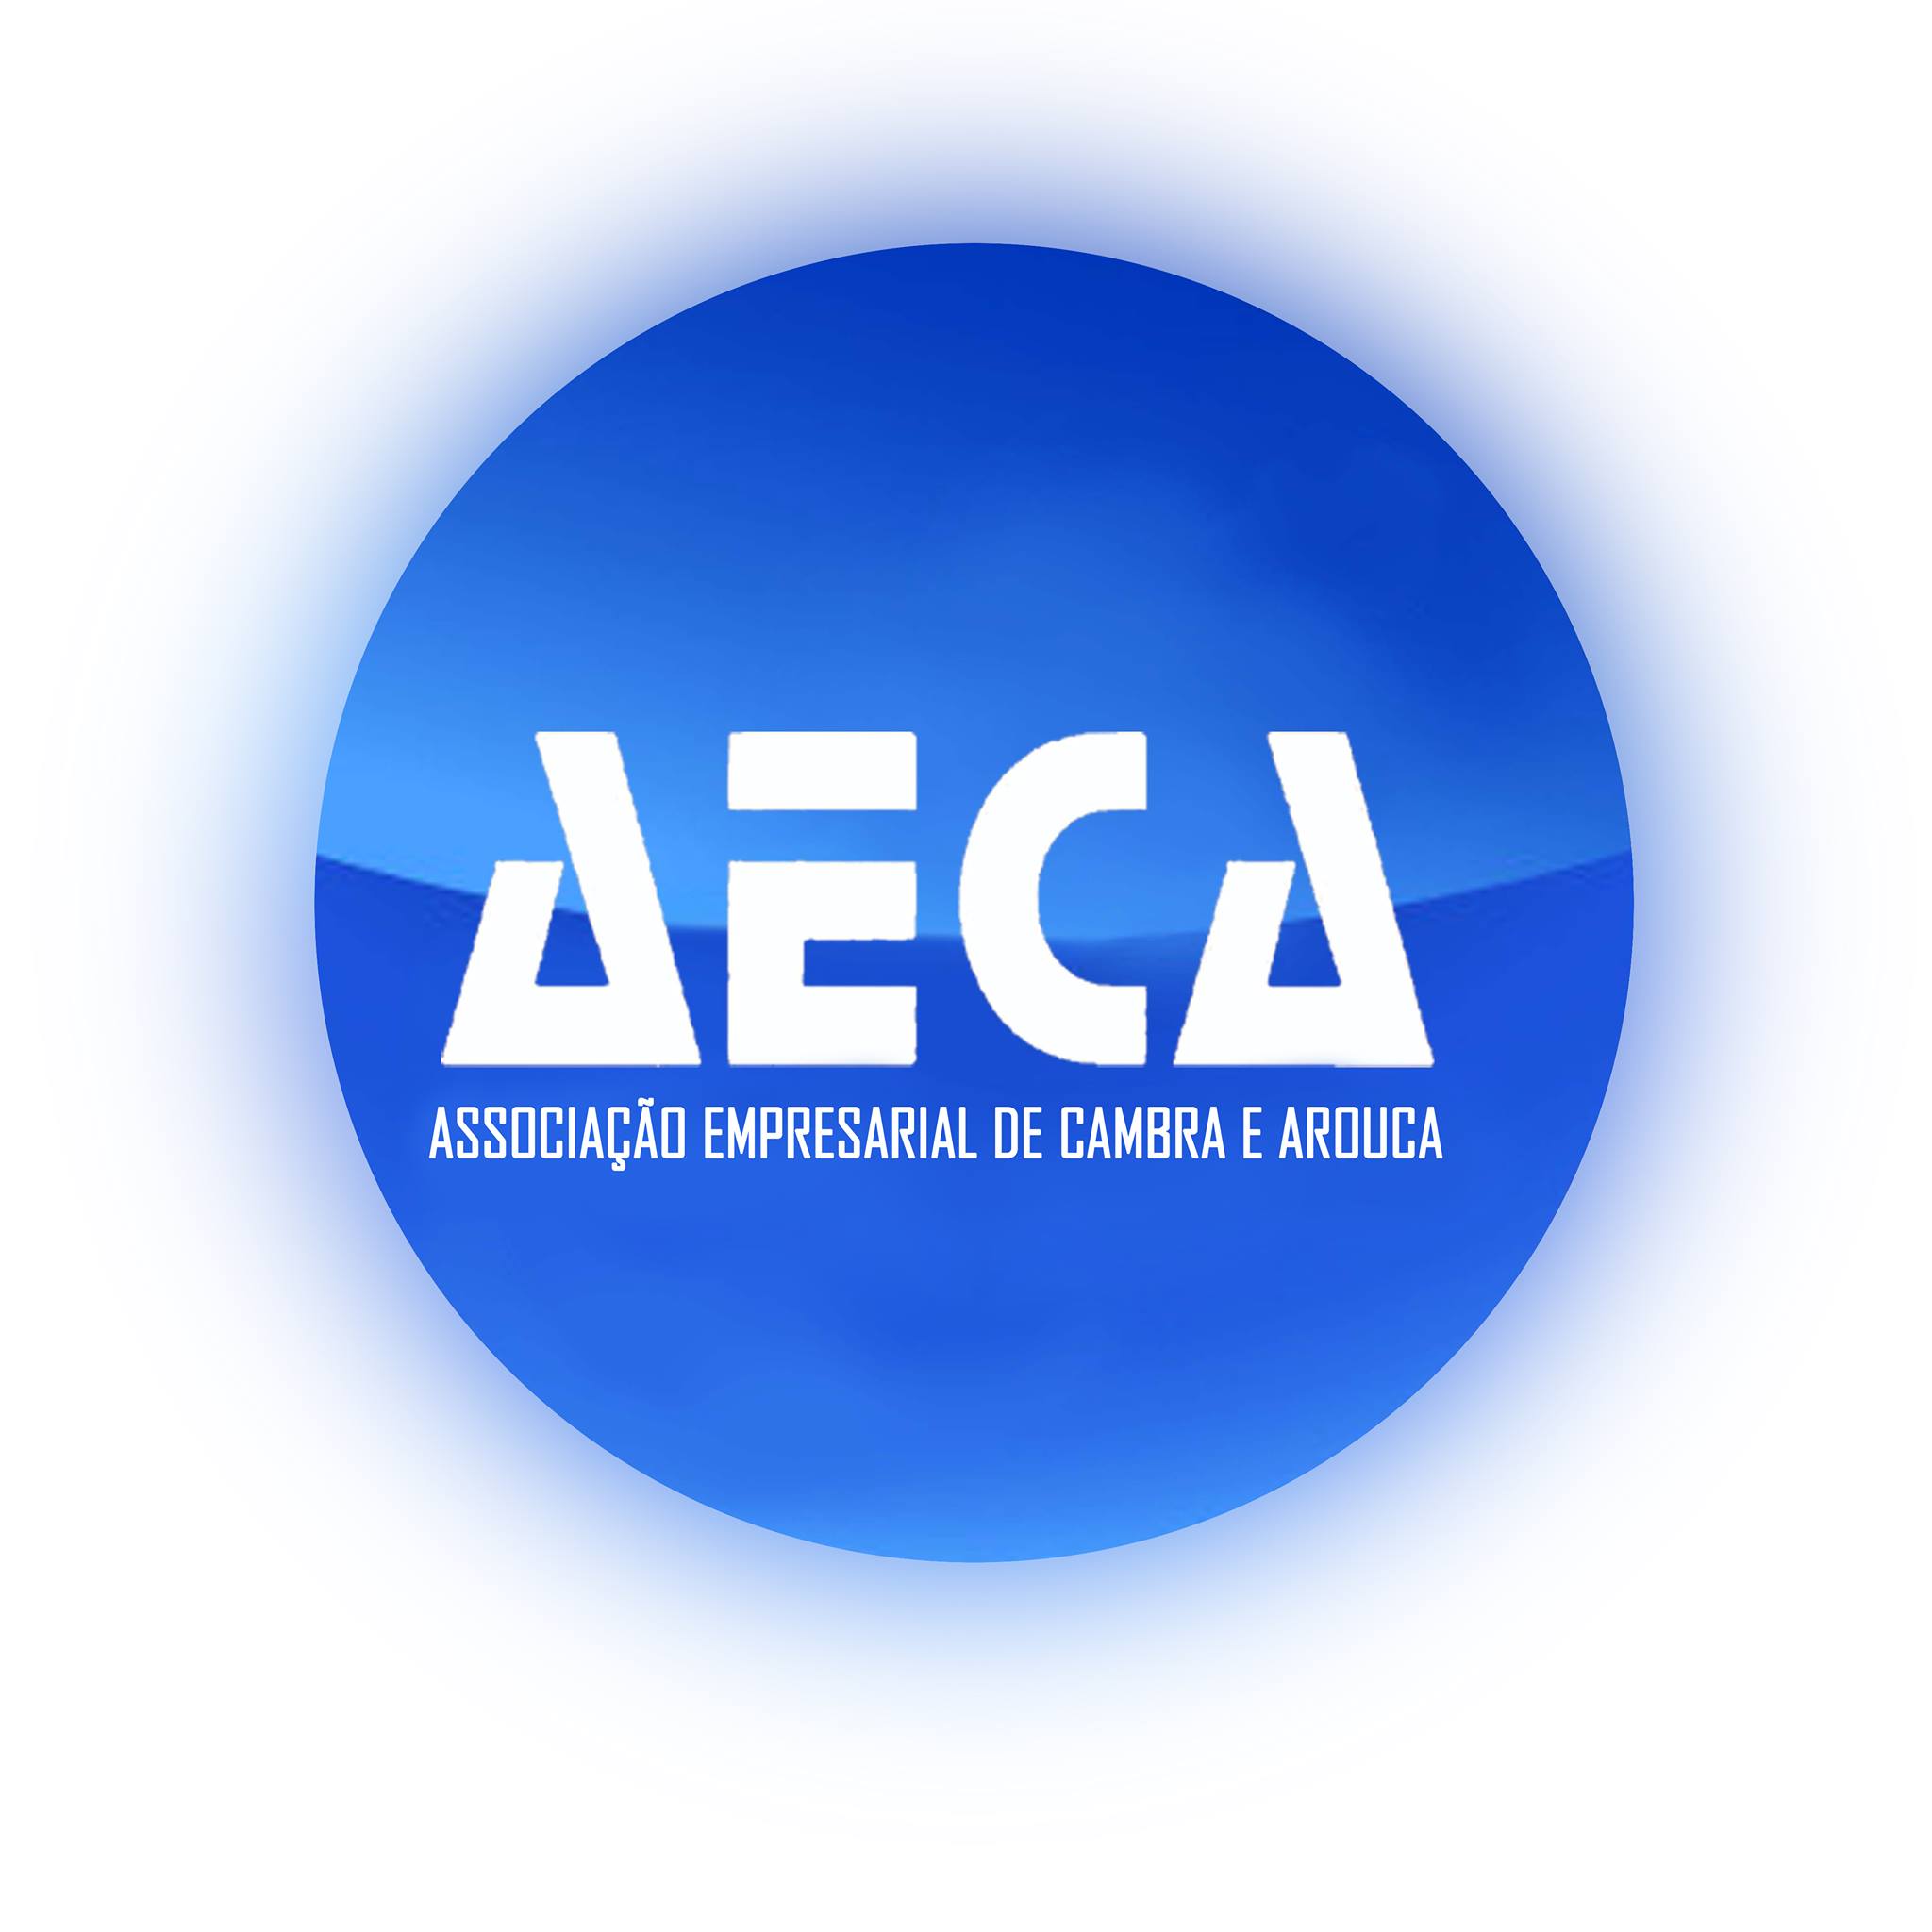 AECA - Associação Empresarial de Cambra e Arouca